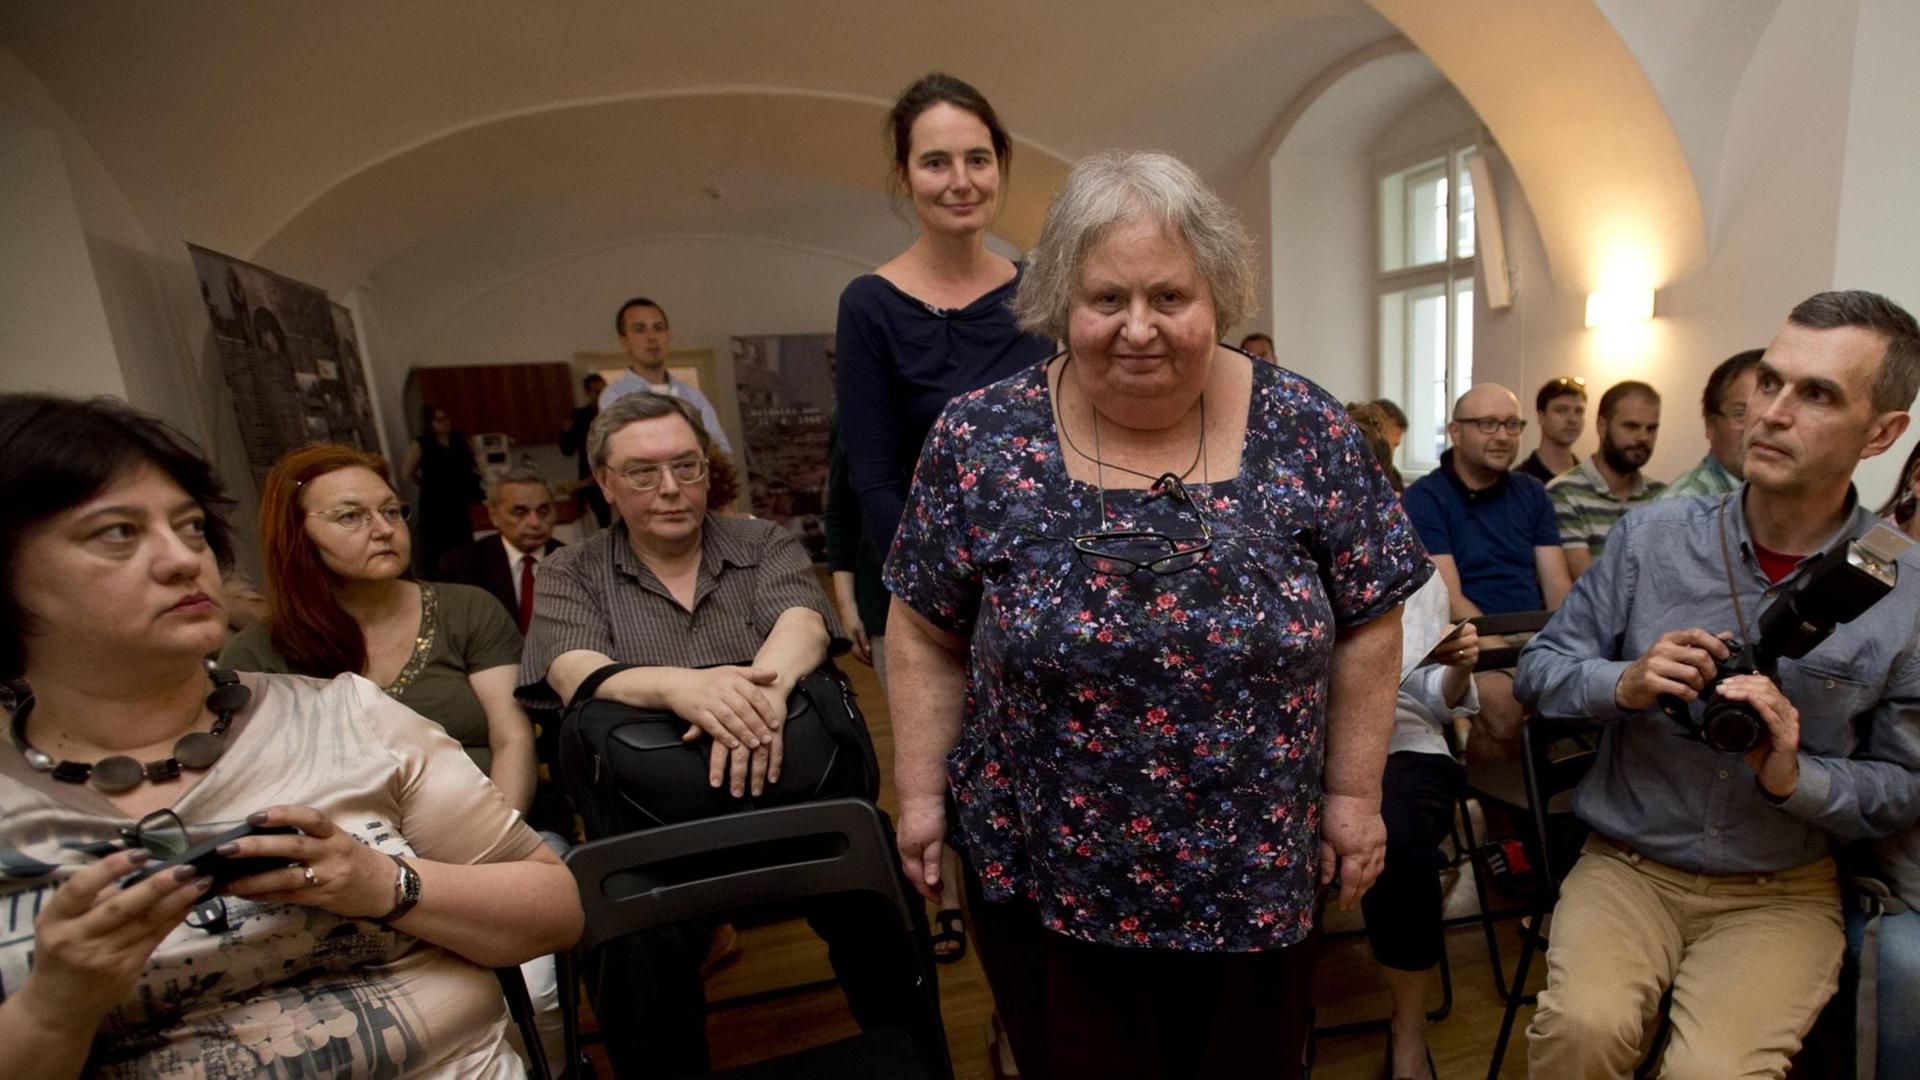 Die sowietische Dissidentin Olga Iofe Prokhorova (Bild Mitte) spricht auf einer Veranstaltung in der Vaclav Havel Bücherei in Prag, im August 2016.